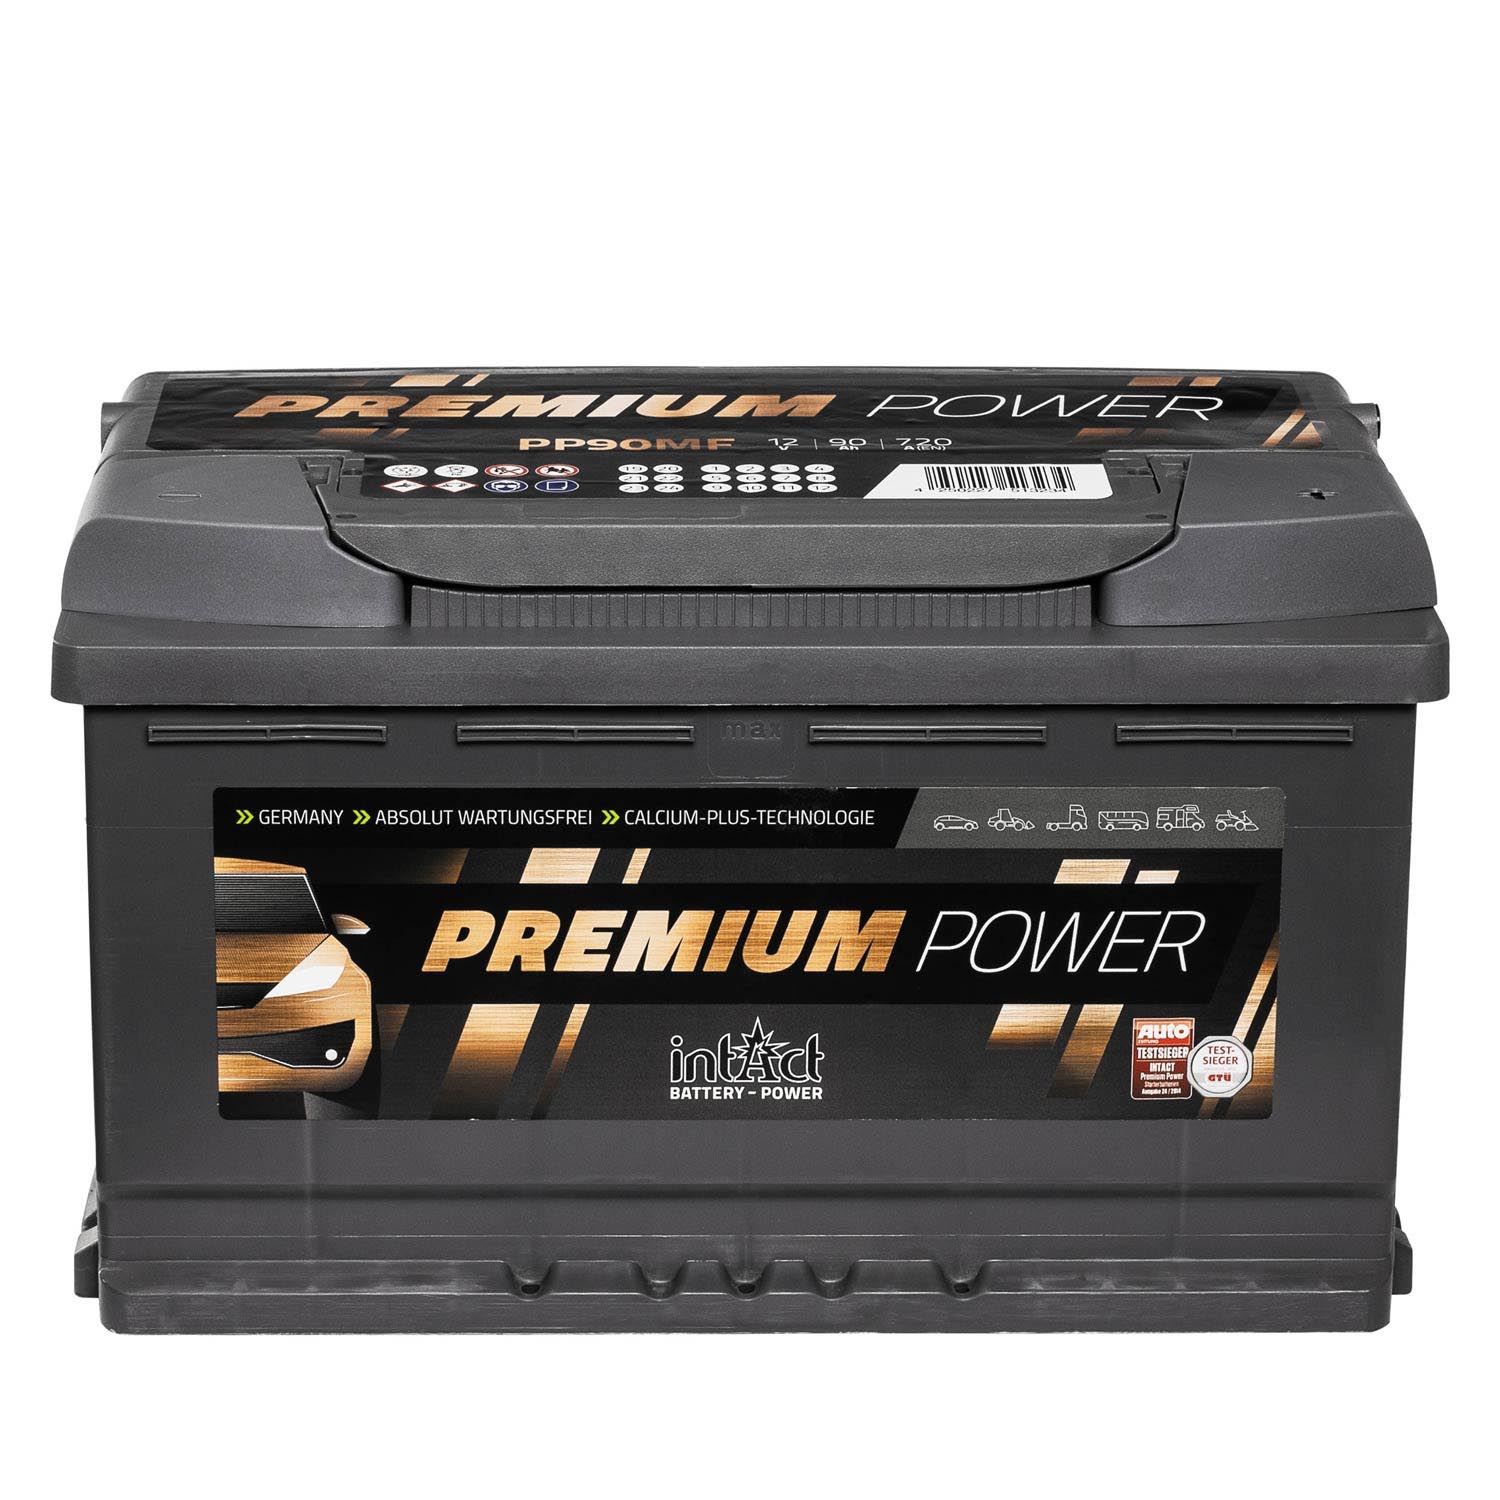 intact Premium Power PP90MF PP80MF Autobatterie 12V 90Ah Testsieger GTÜ 2014 